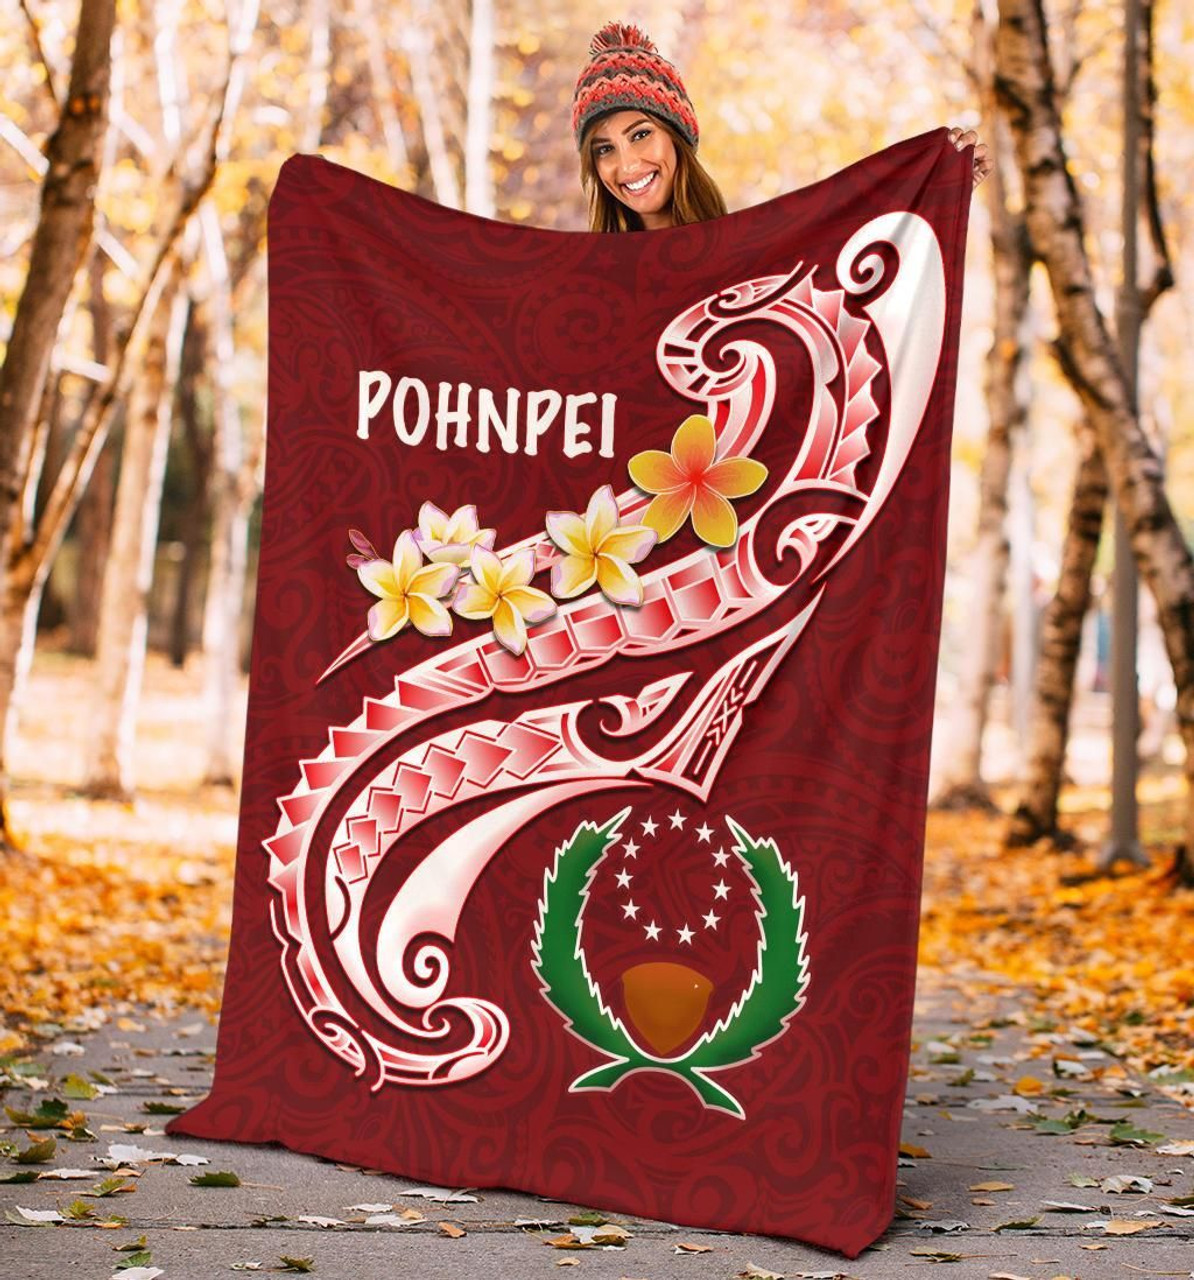 Pohnpei Premium Blanket - Pohnpei Seal Polynesian Patterns Plumeria 4